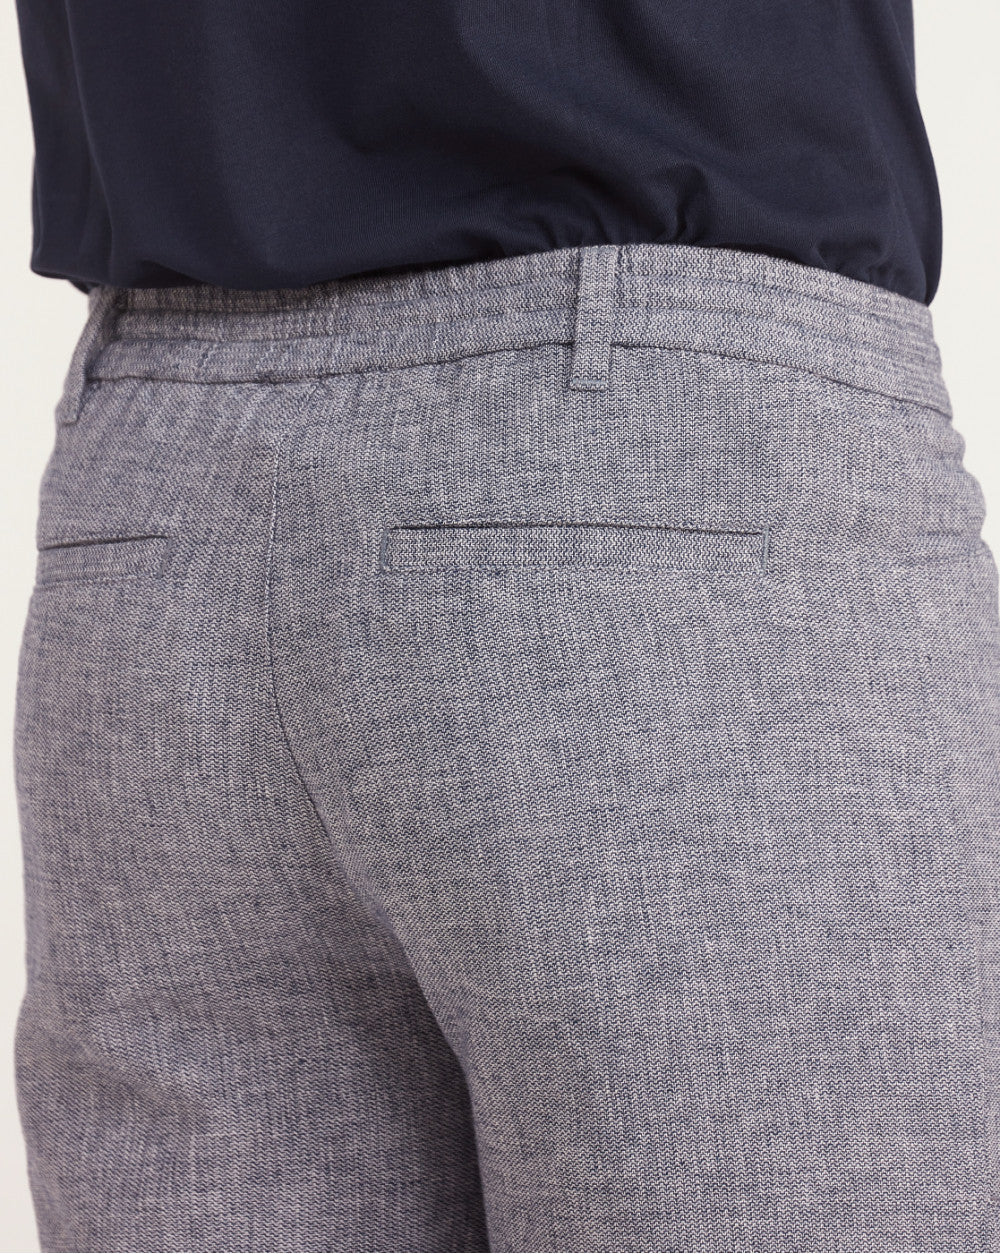 Regular Fit Textured Linen Shorts - Space Blue